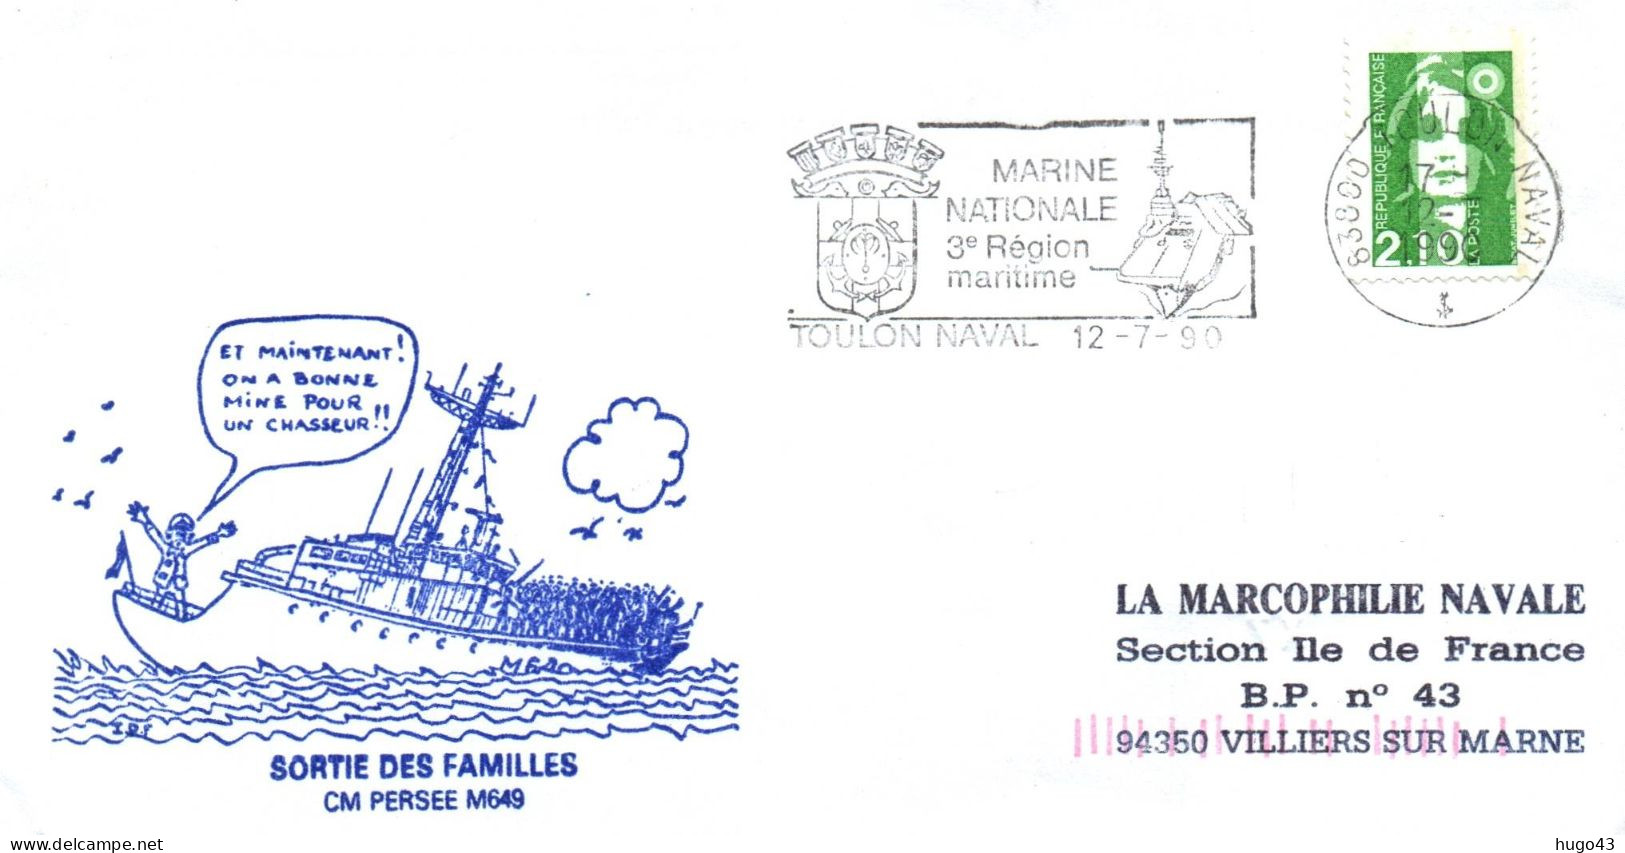 ENVELOPPE AVEC CACHET CM PERSEE M649 - SORTIE DES FAMILLES - TOULON NAVAL LE 12/7/90 - Poste Navale